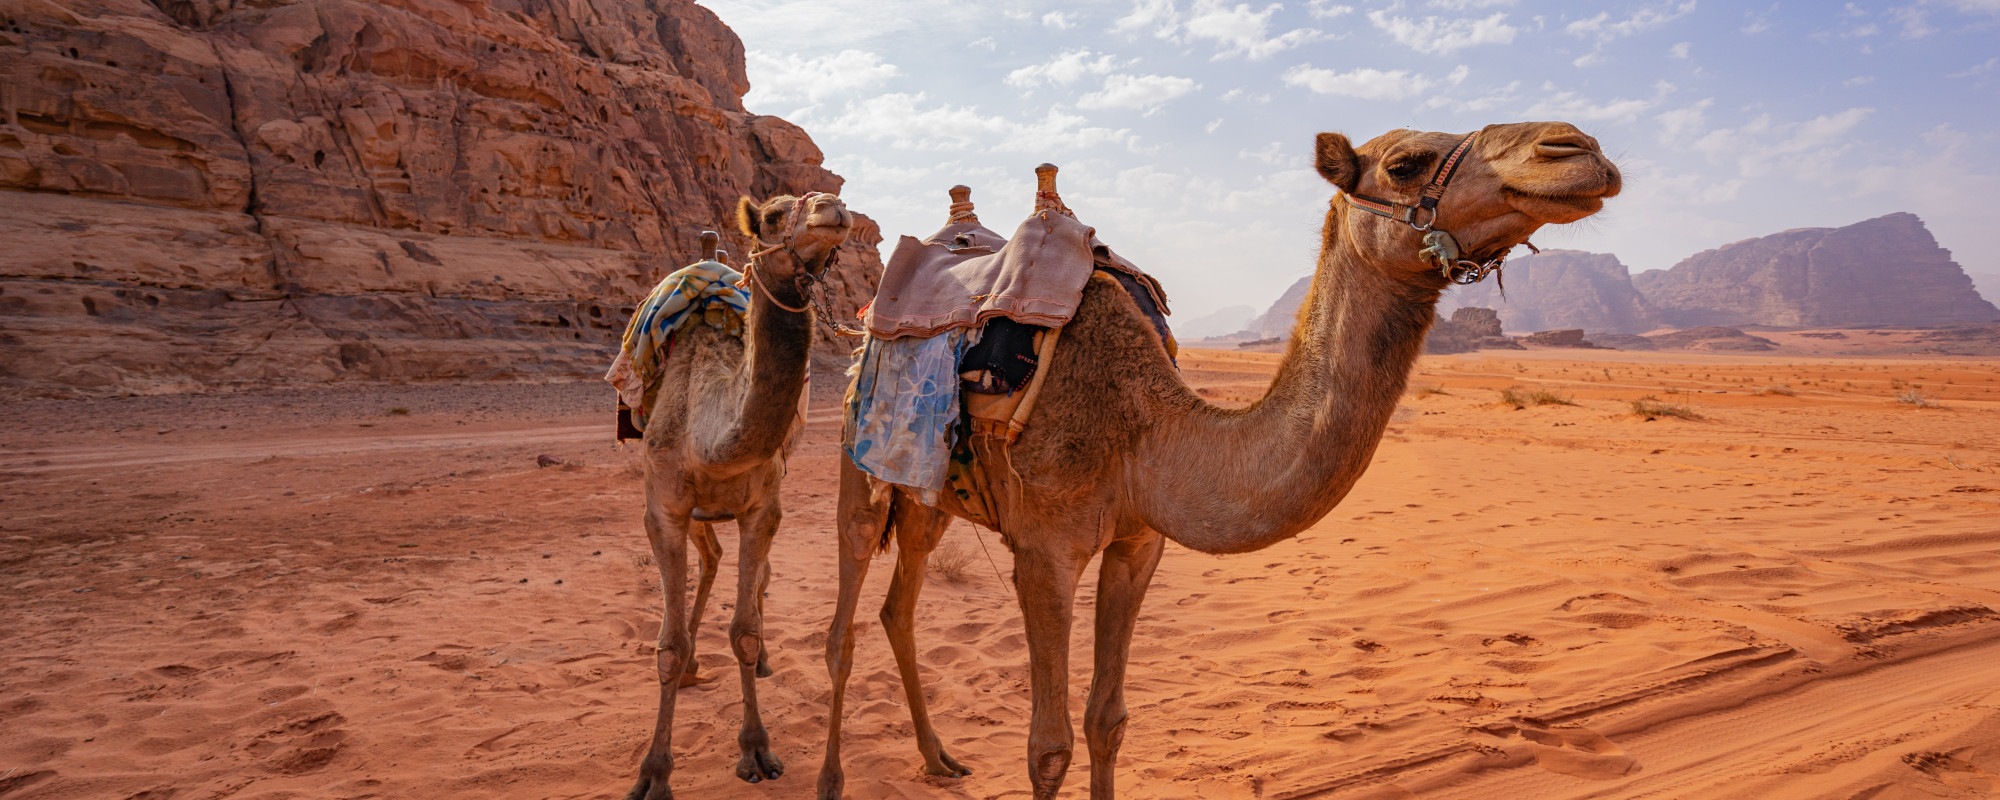 Kamel in Wüste